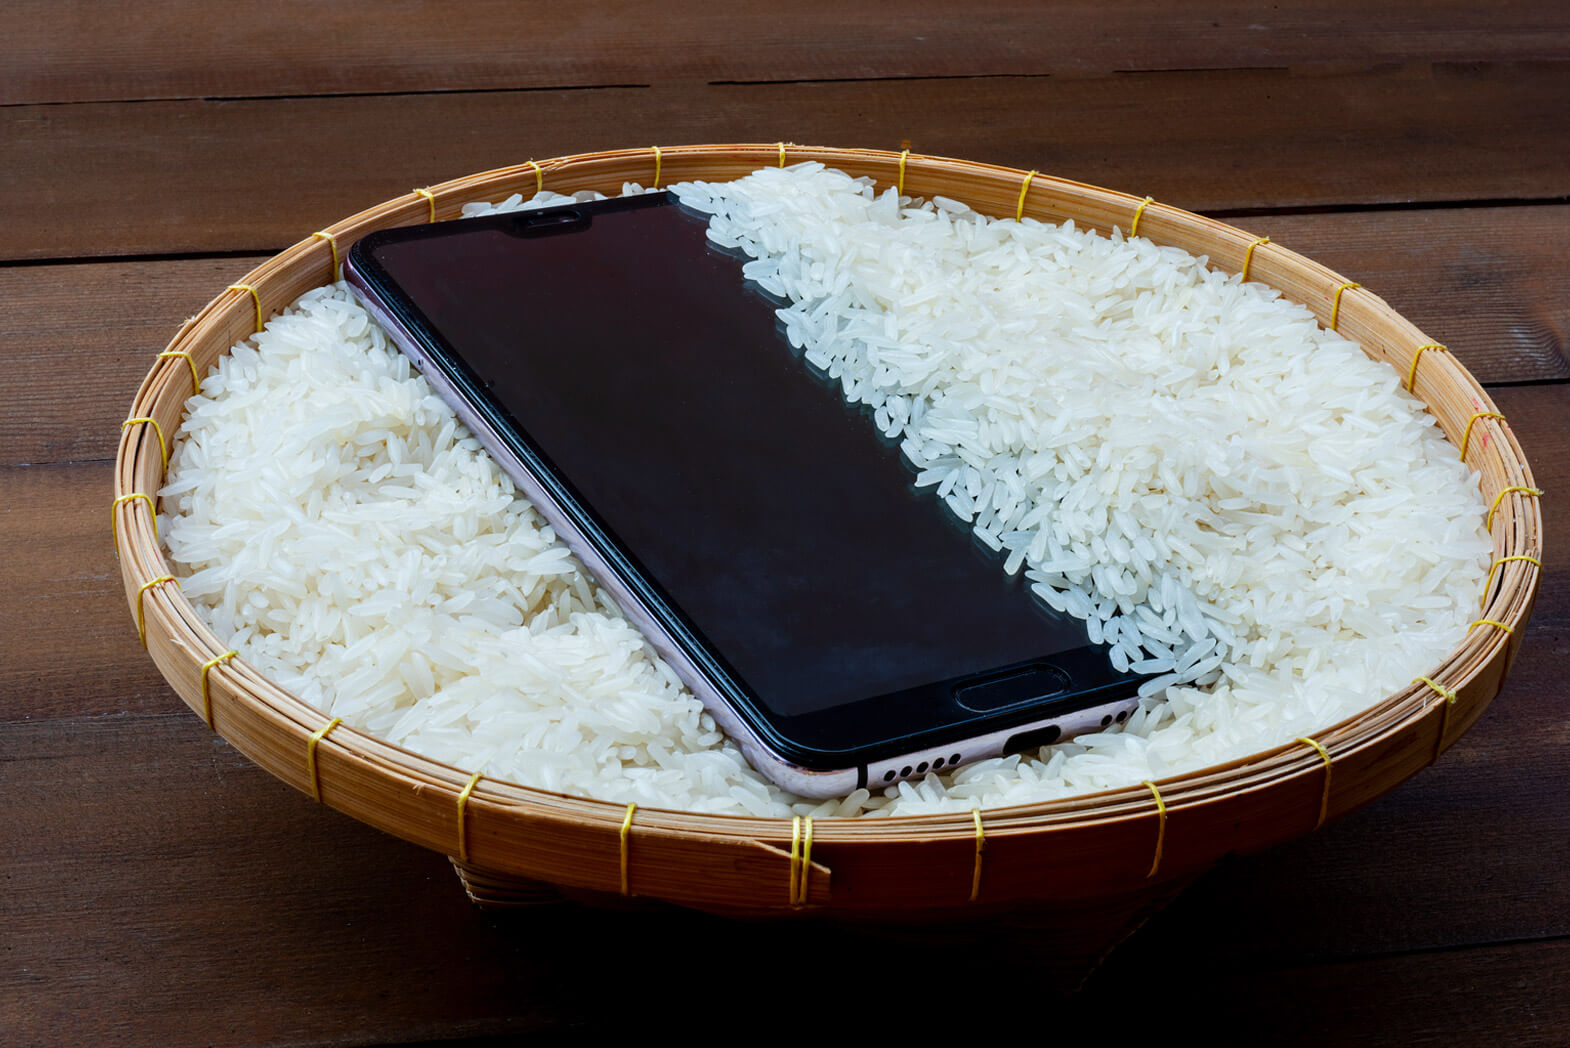 وضع الهاتف المبلل في الأرز